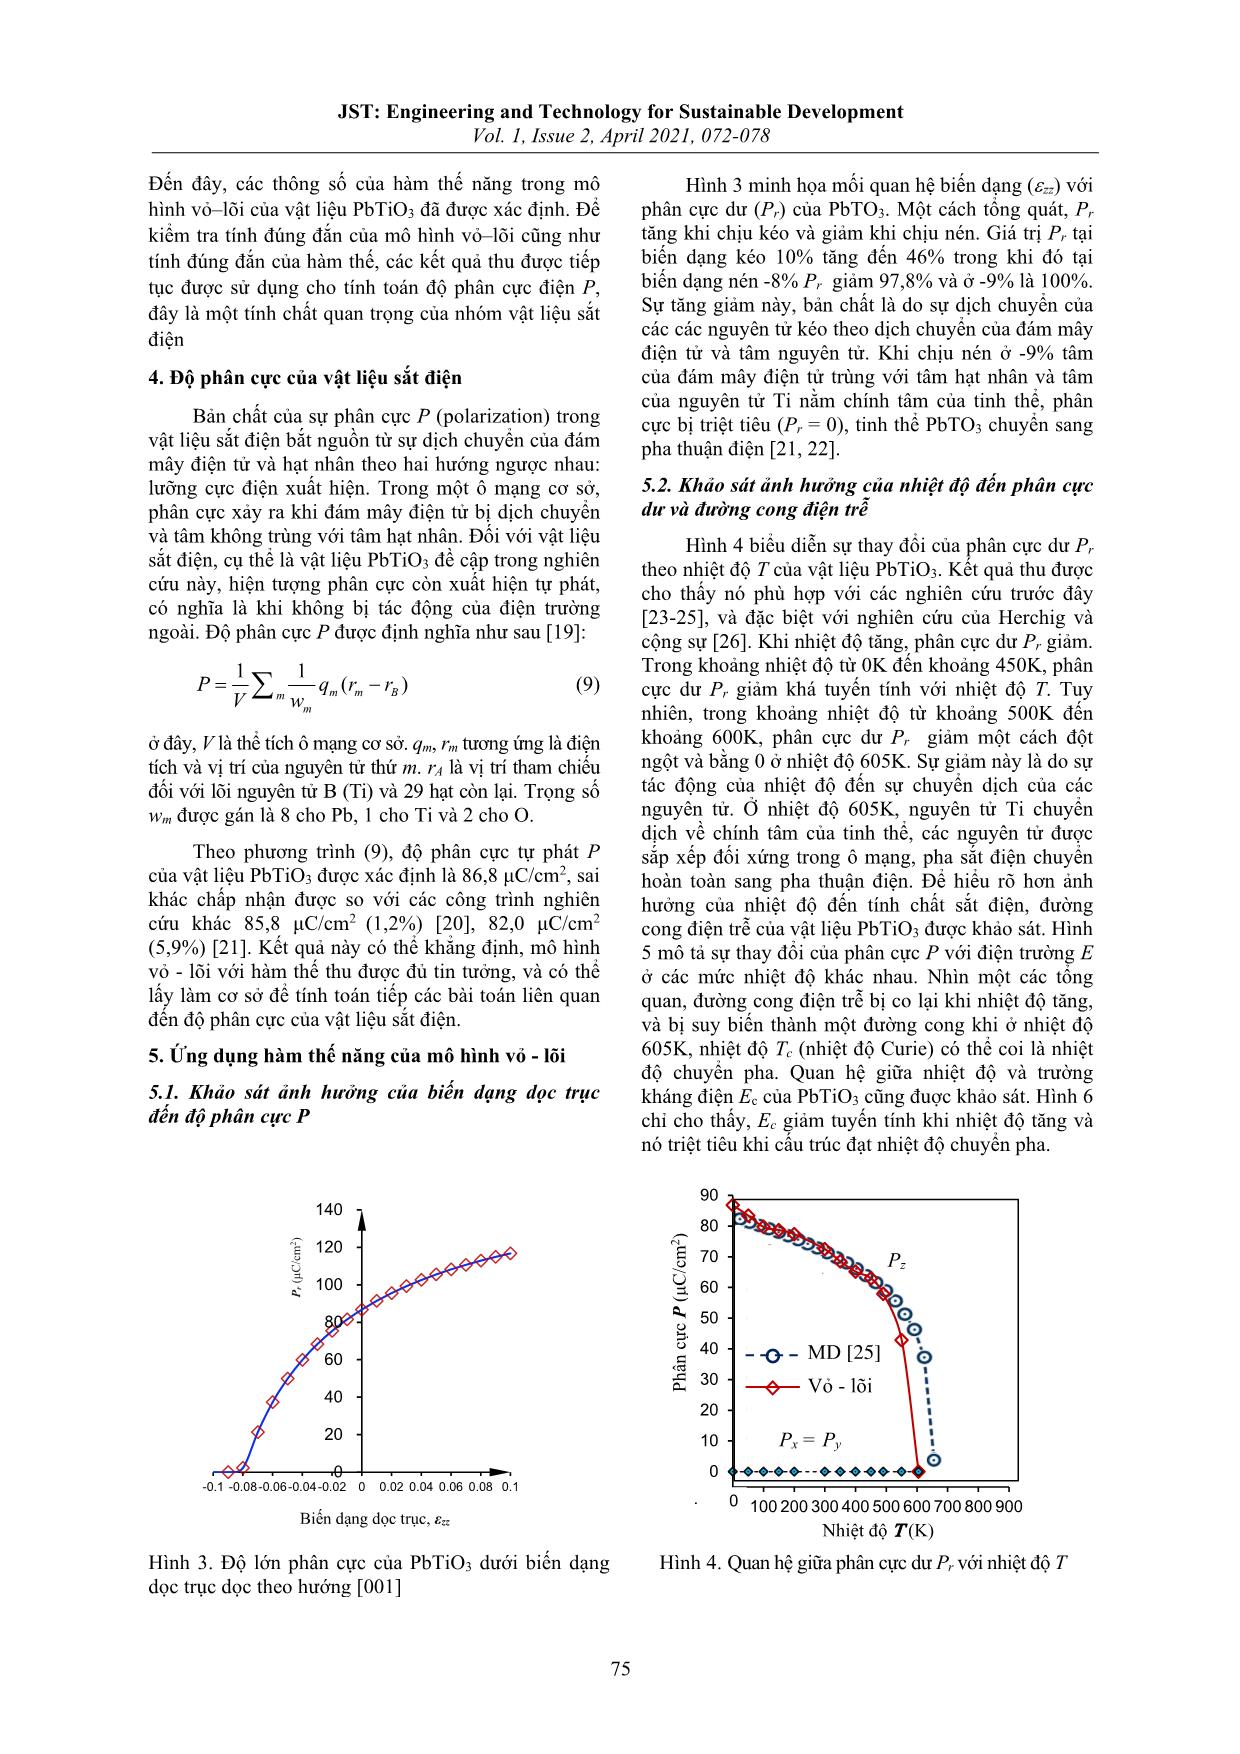 Xác định hàm thế năng của mô hình vỏ-lõi cho vật liệu sắt điện PbTiO₃ và ứng dụng trong tính toán độ phân cực trang 4